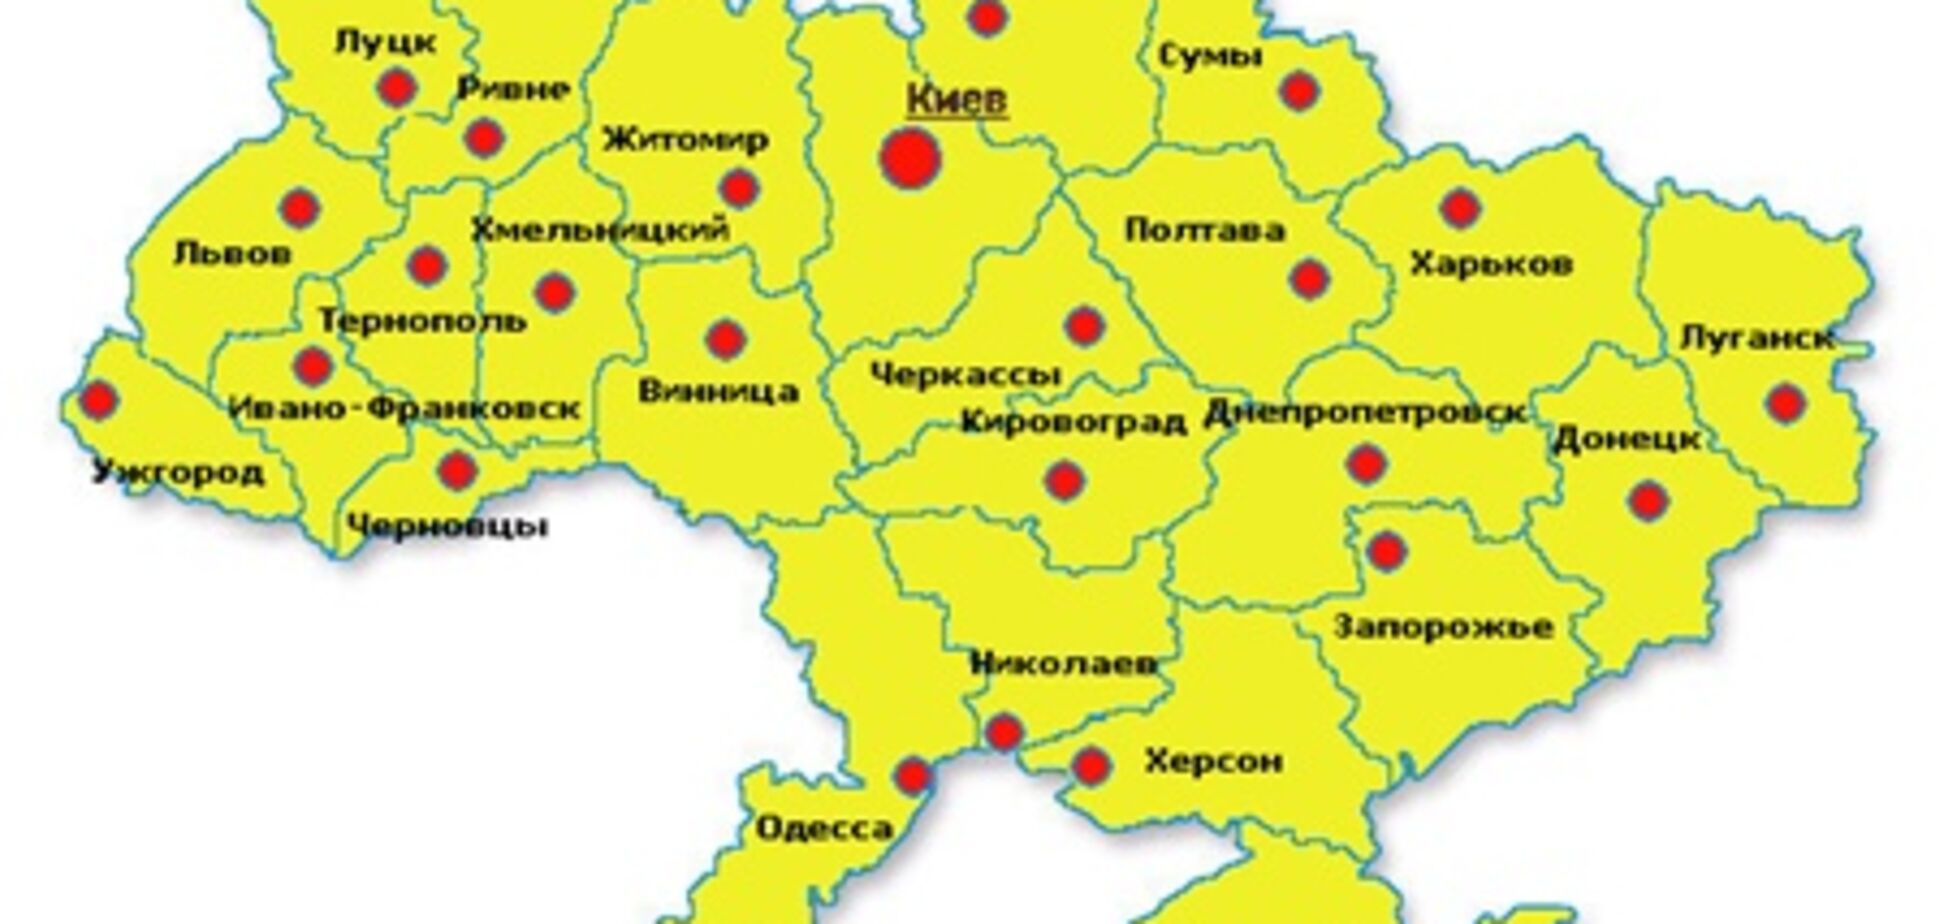 Почему так сильно отличаются цены на жилье в городах Украины?